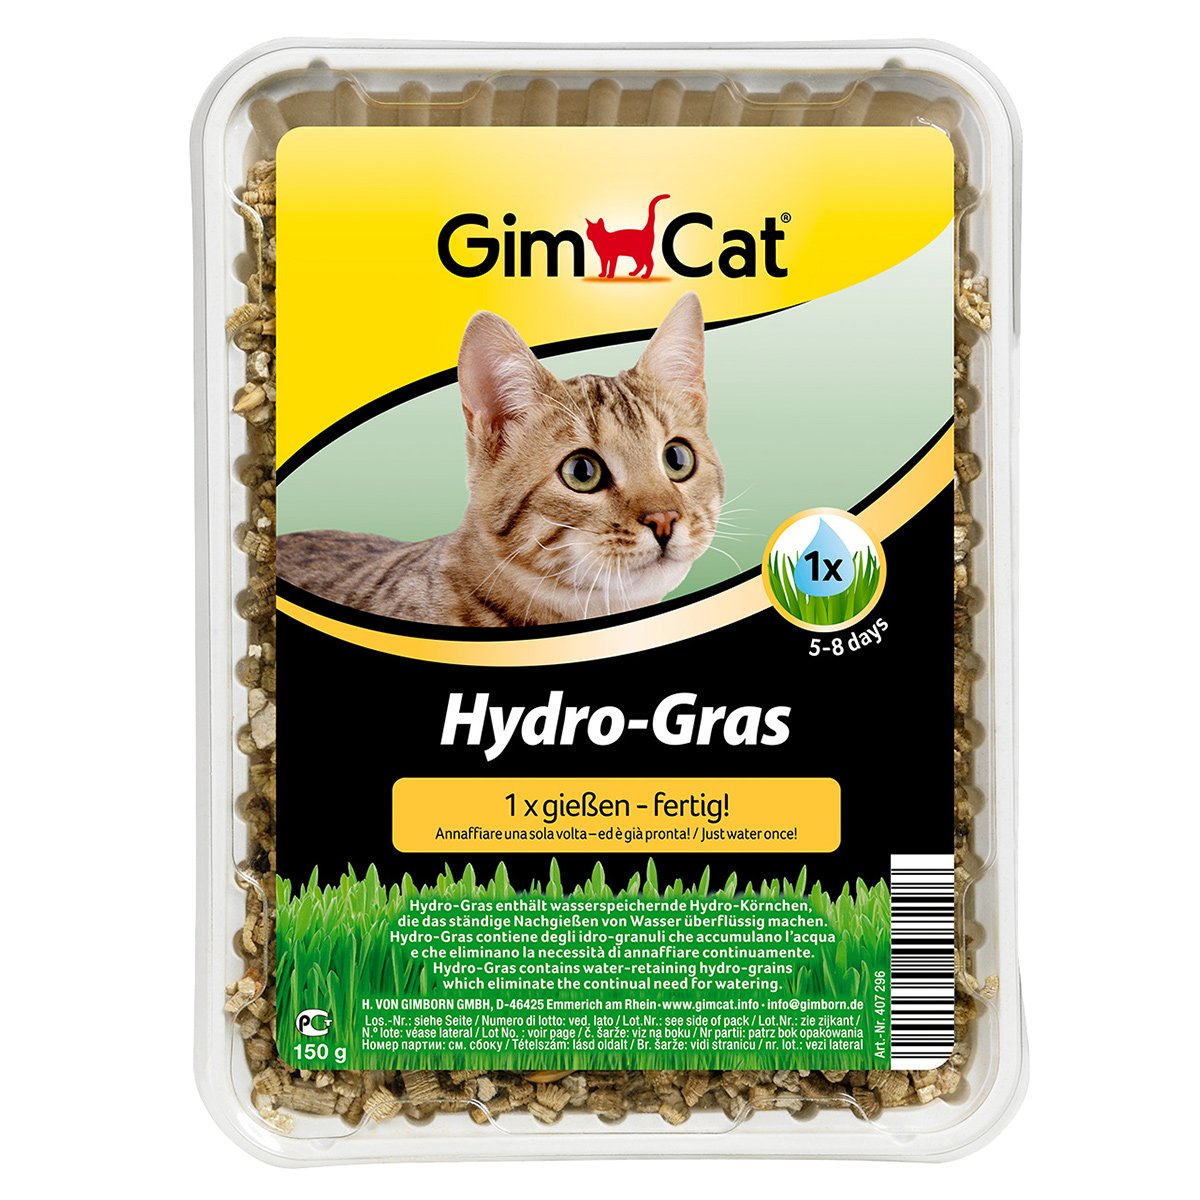 GimCat HydroGras 150g von Gimcat